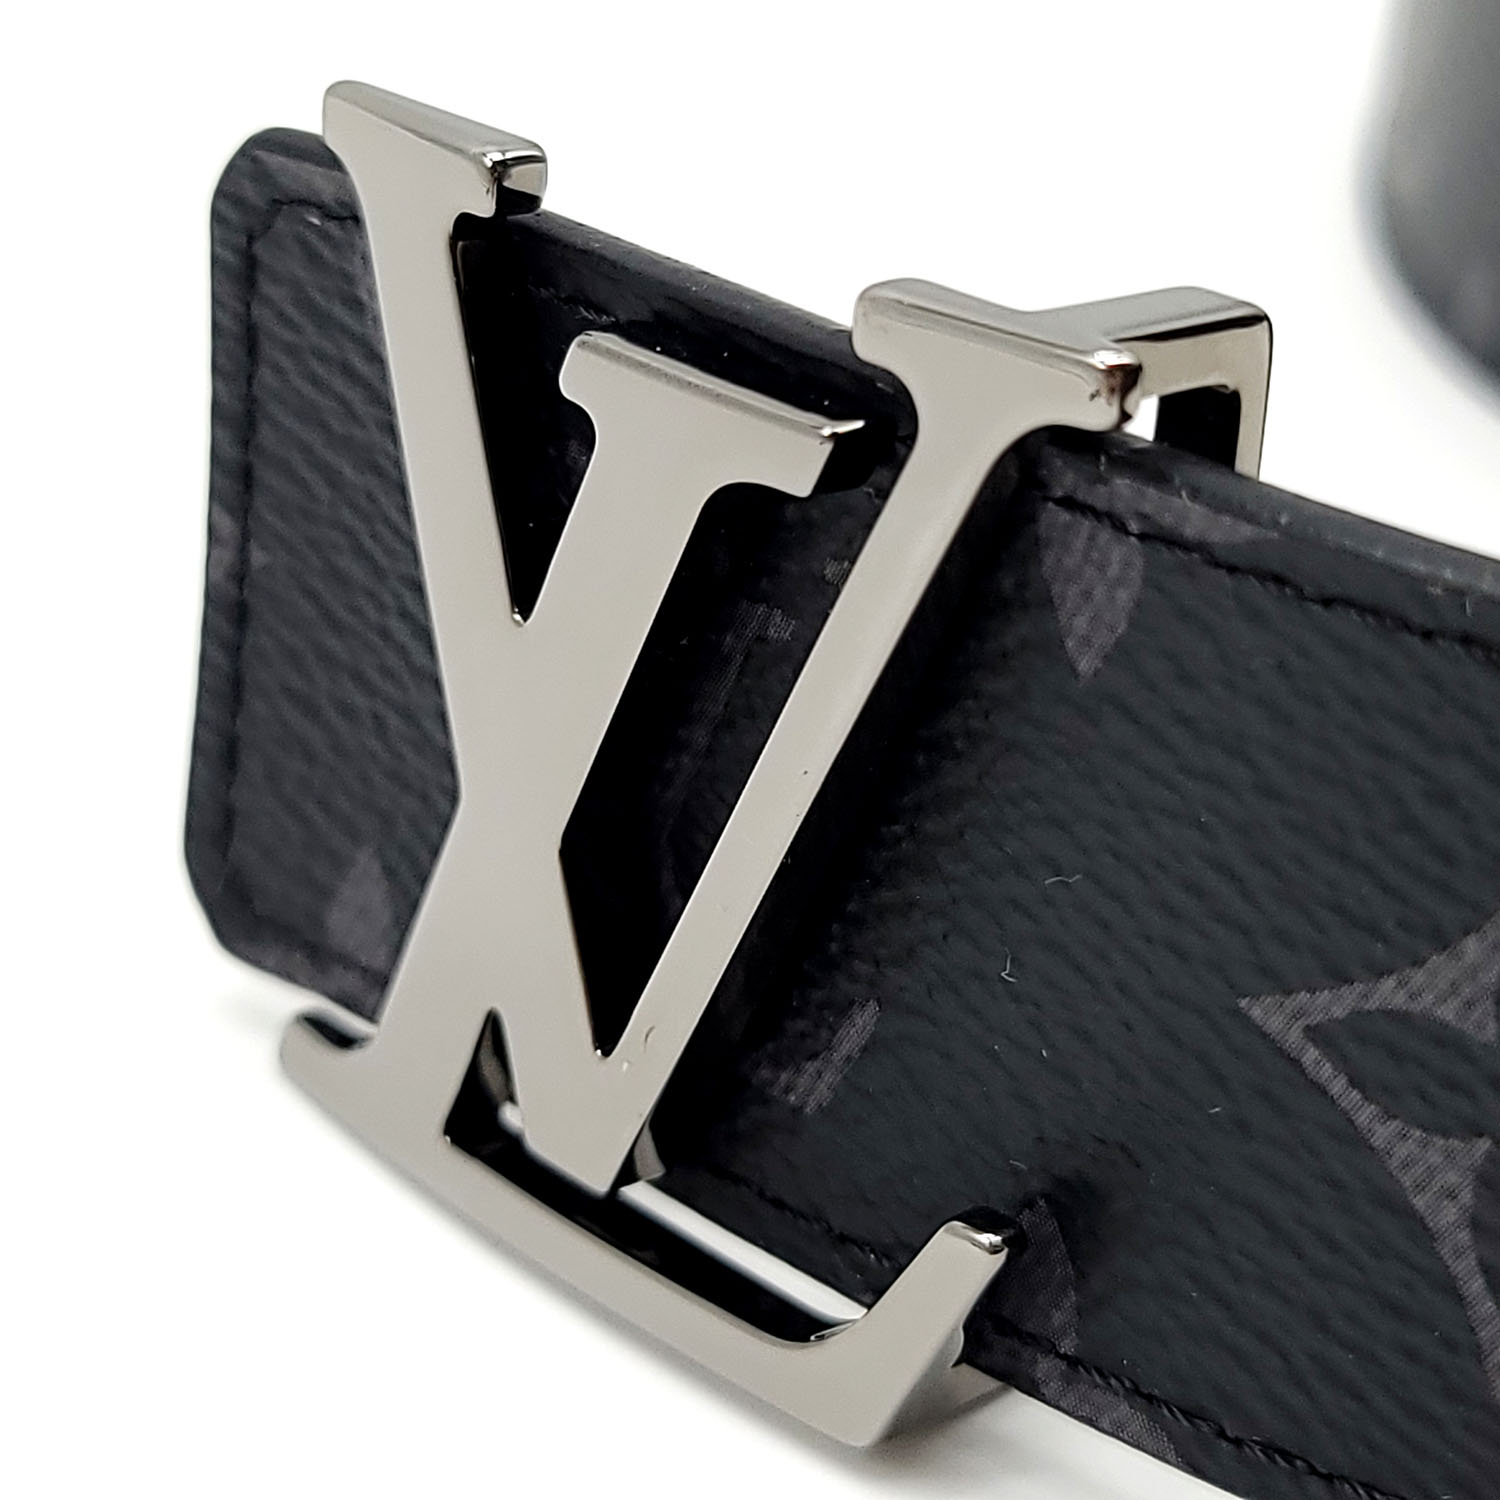 Louis Vuitton LV Optic 40mm Reversible Belt Grey Leather. Size 95 cm